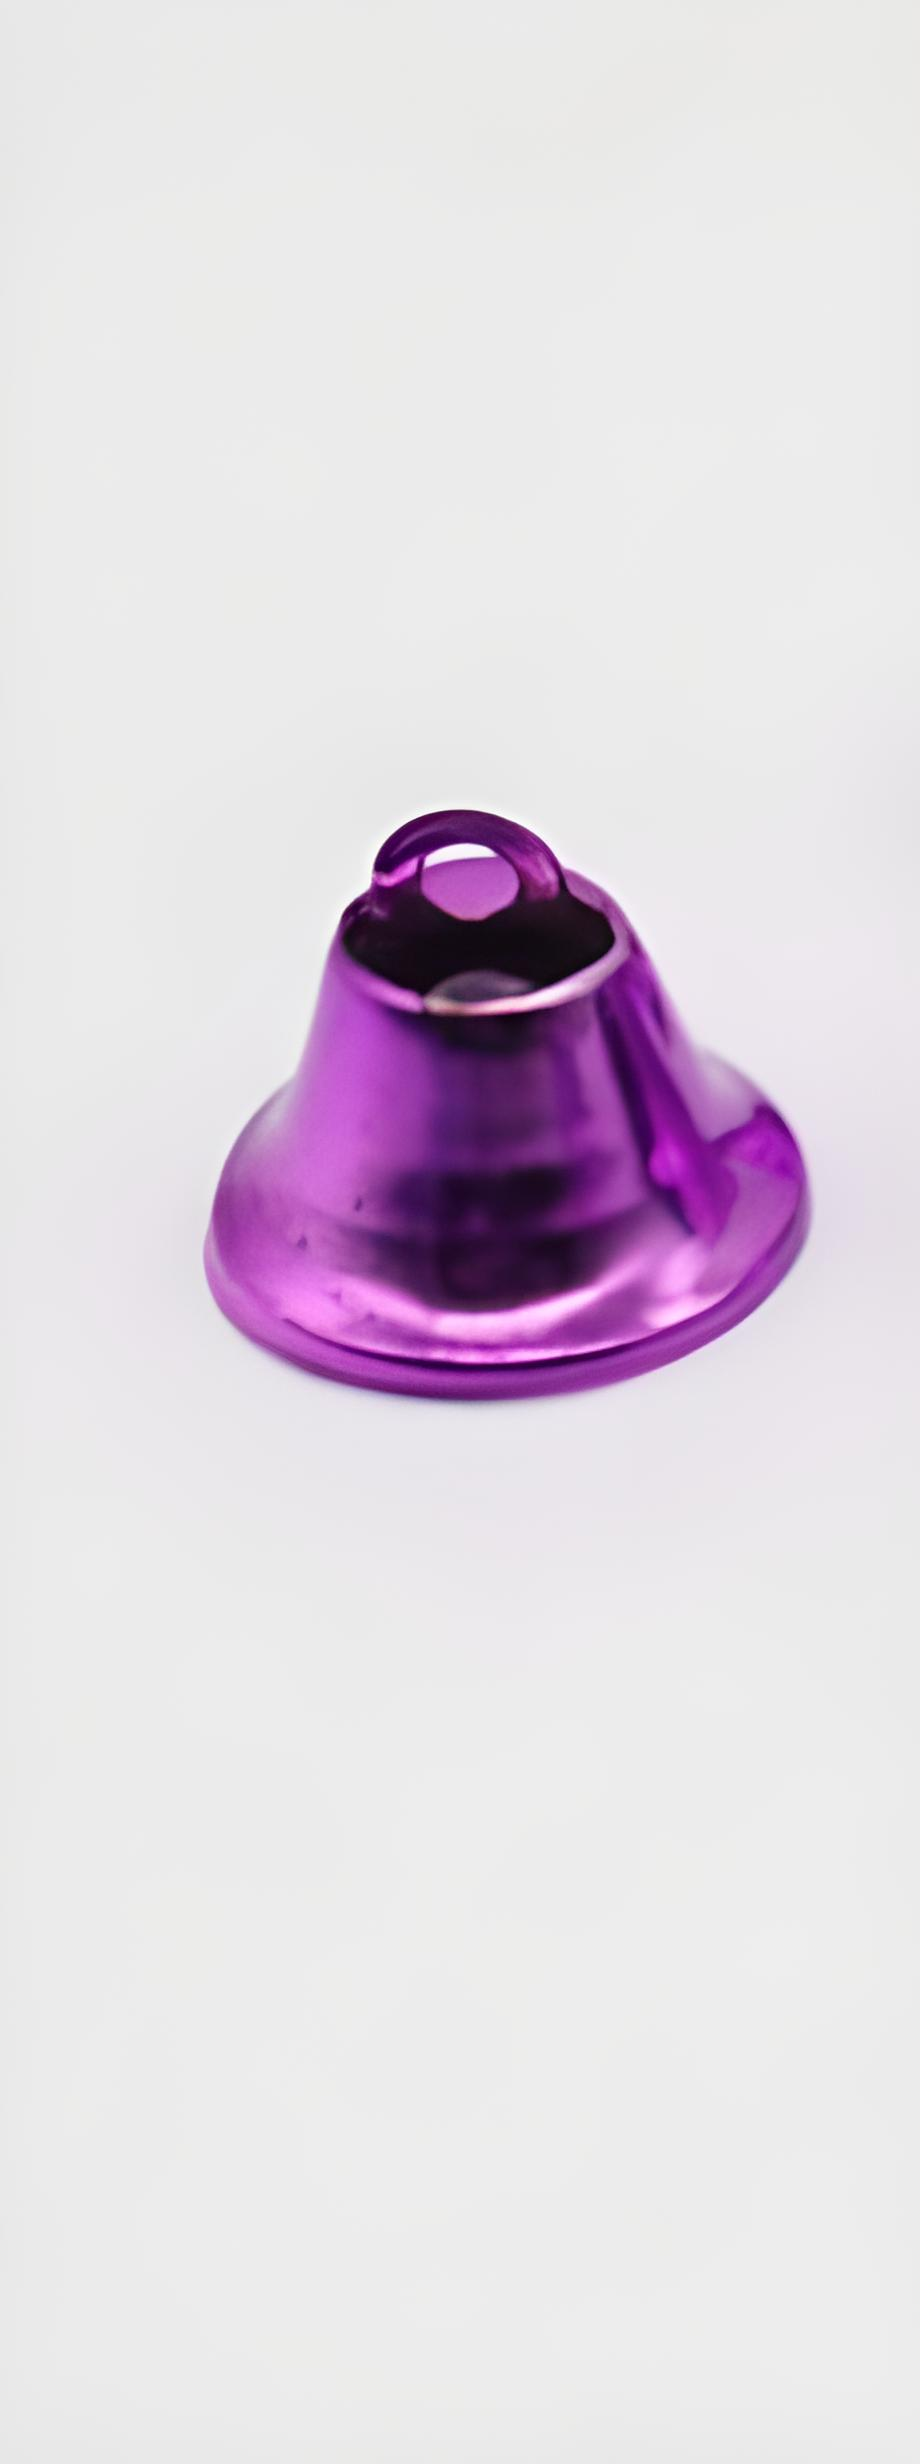 Заготовка колокольчик подвесной большой 20 мм Фиолетовый (К-034-0)